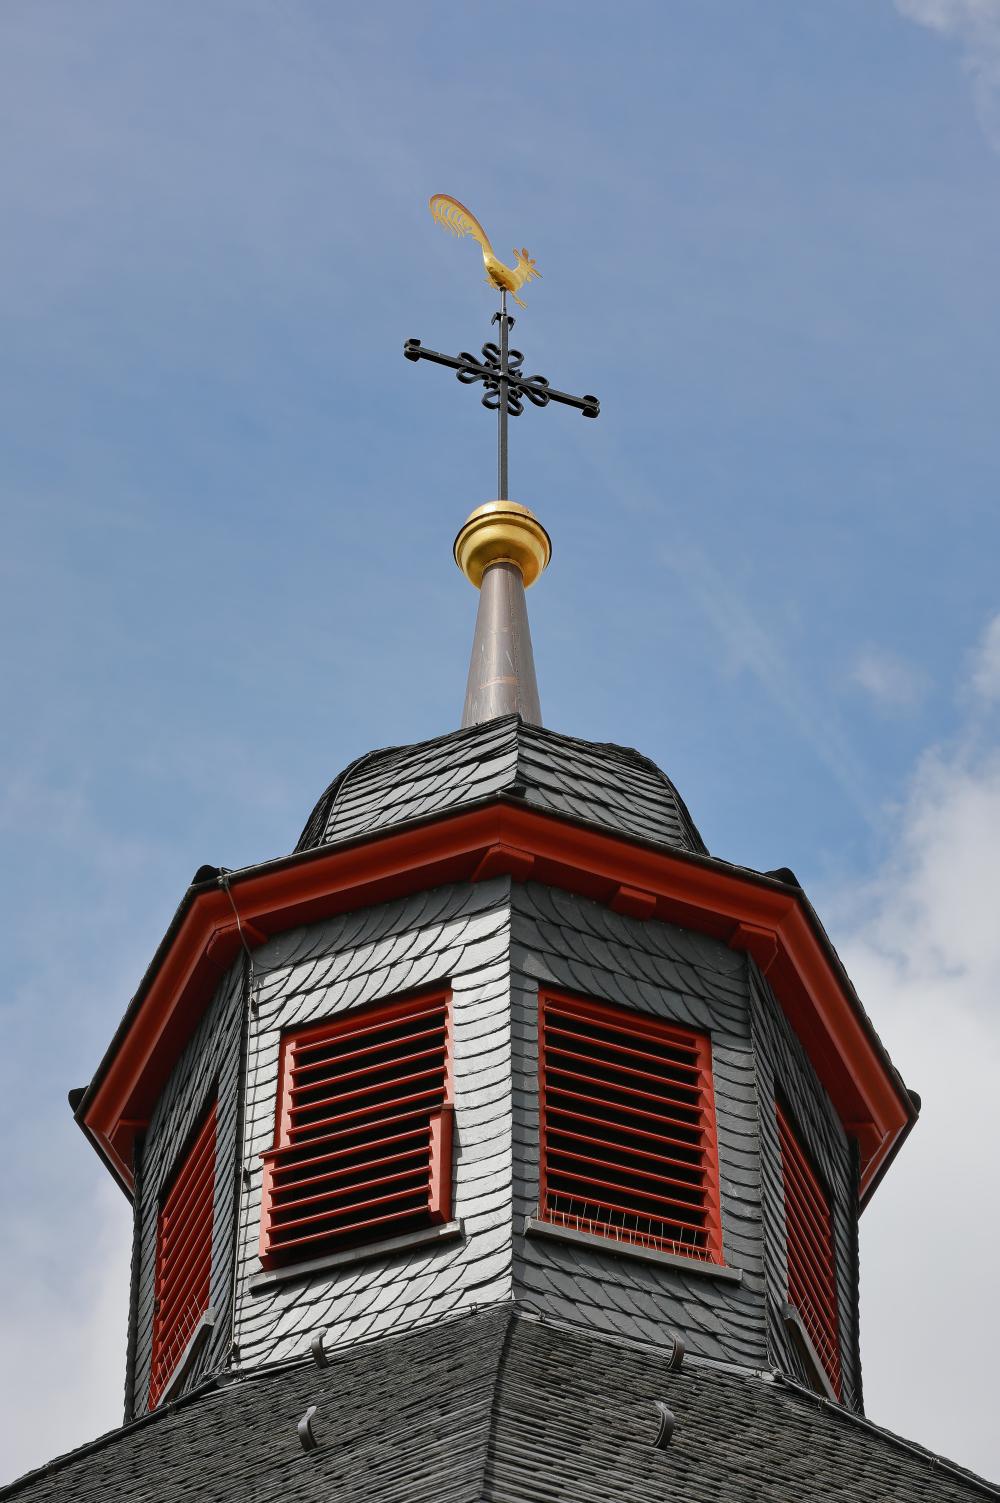 Bilder Evangelische Kirchengemeinde Uelversheim